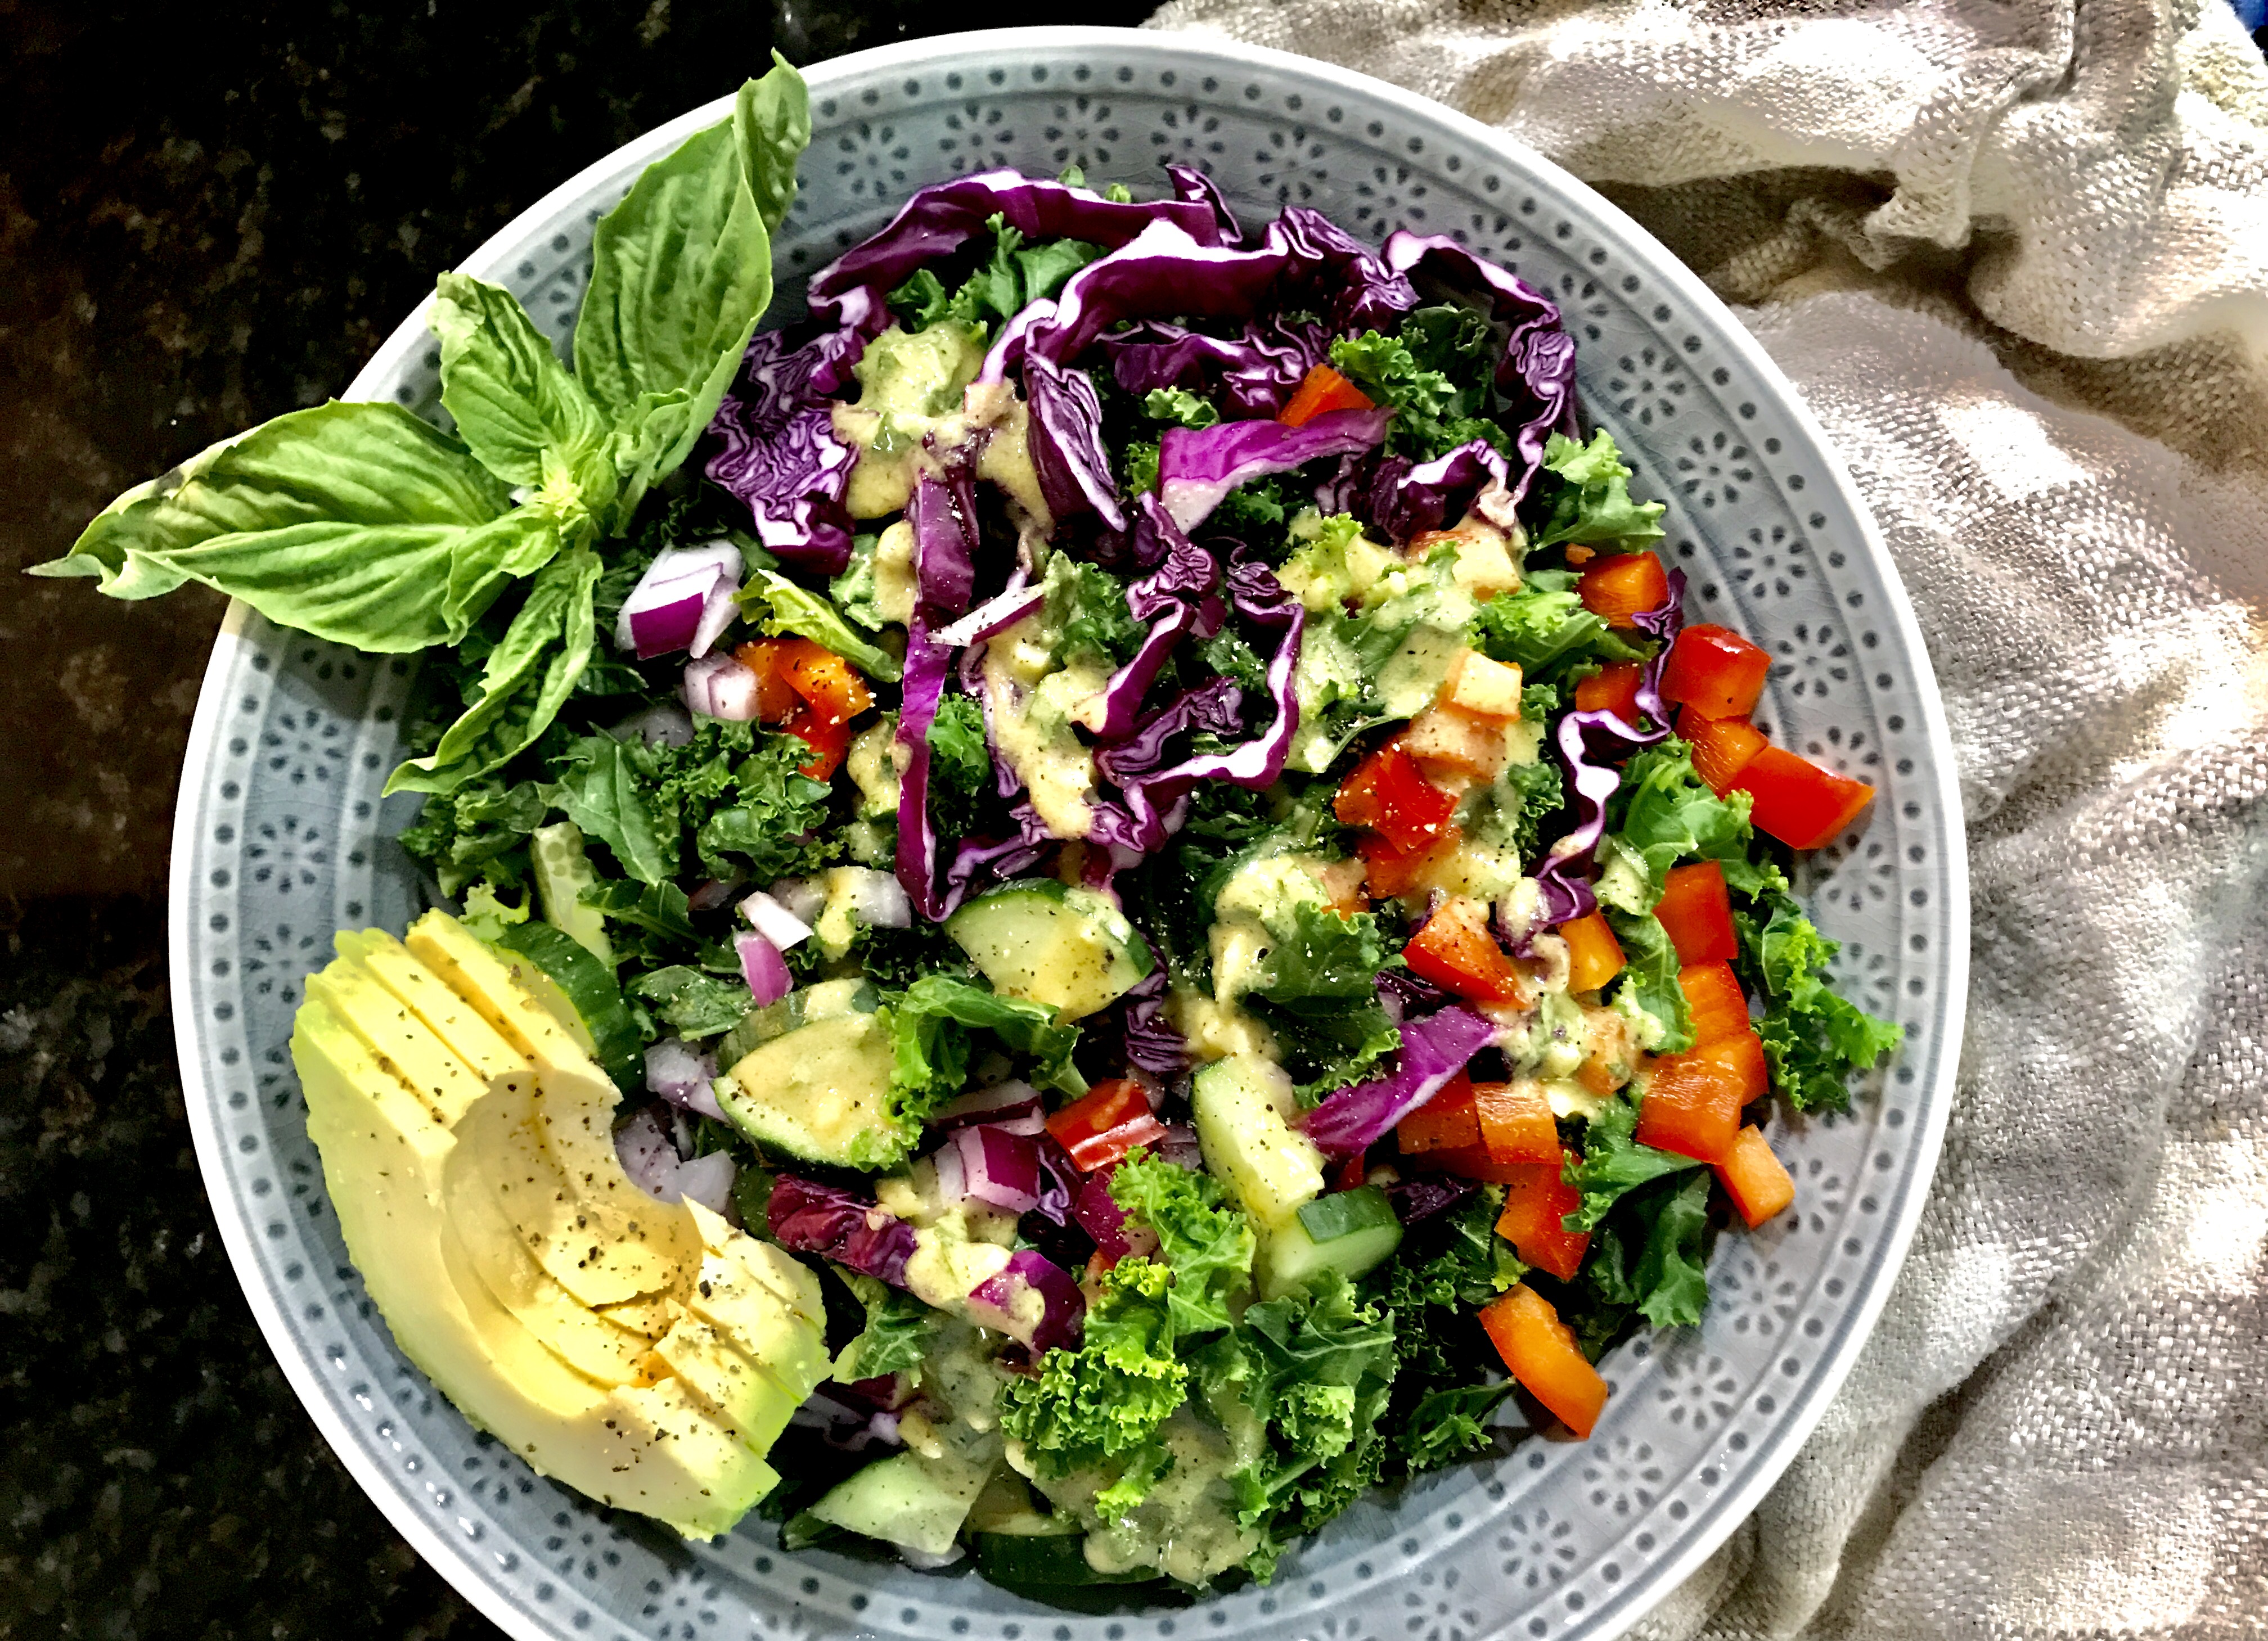 Steamed Kale and Summer Vegetable Salad with a Lemon-Basil Vinaigrette